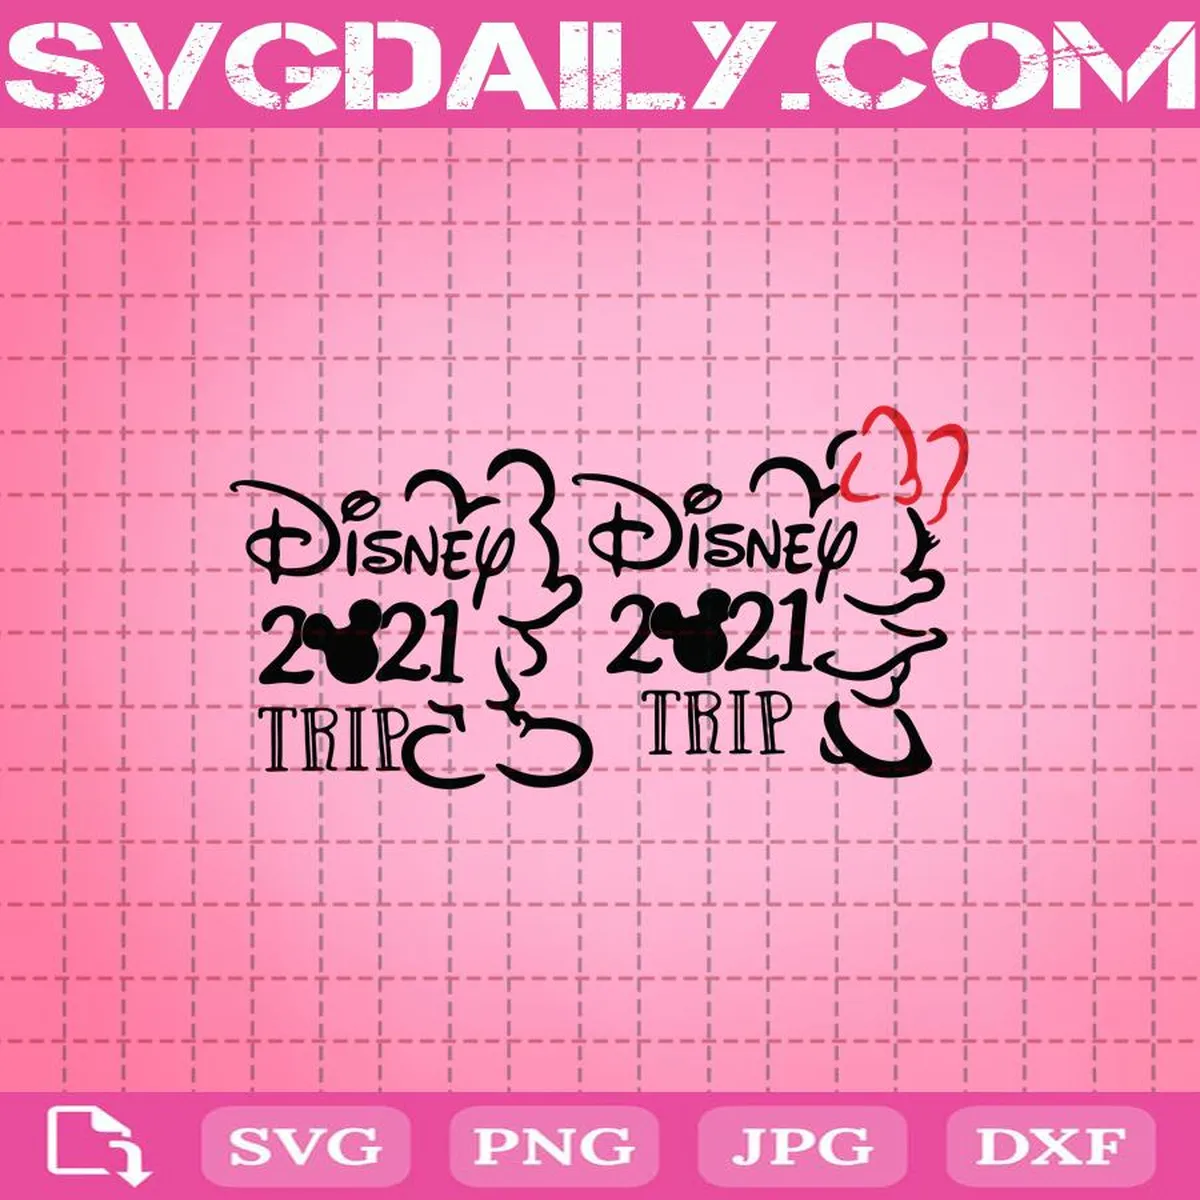 Disney 2021 Trip Svg Bundle, Mickey Mouse Svg, Disneyland Svg, Disney 2021 Trip Svg, Svg Png Dxf Eps AI Instant Download